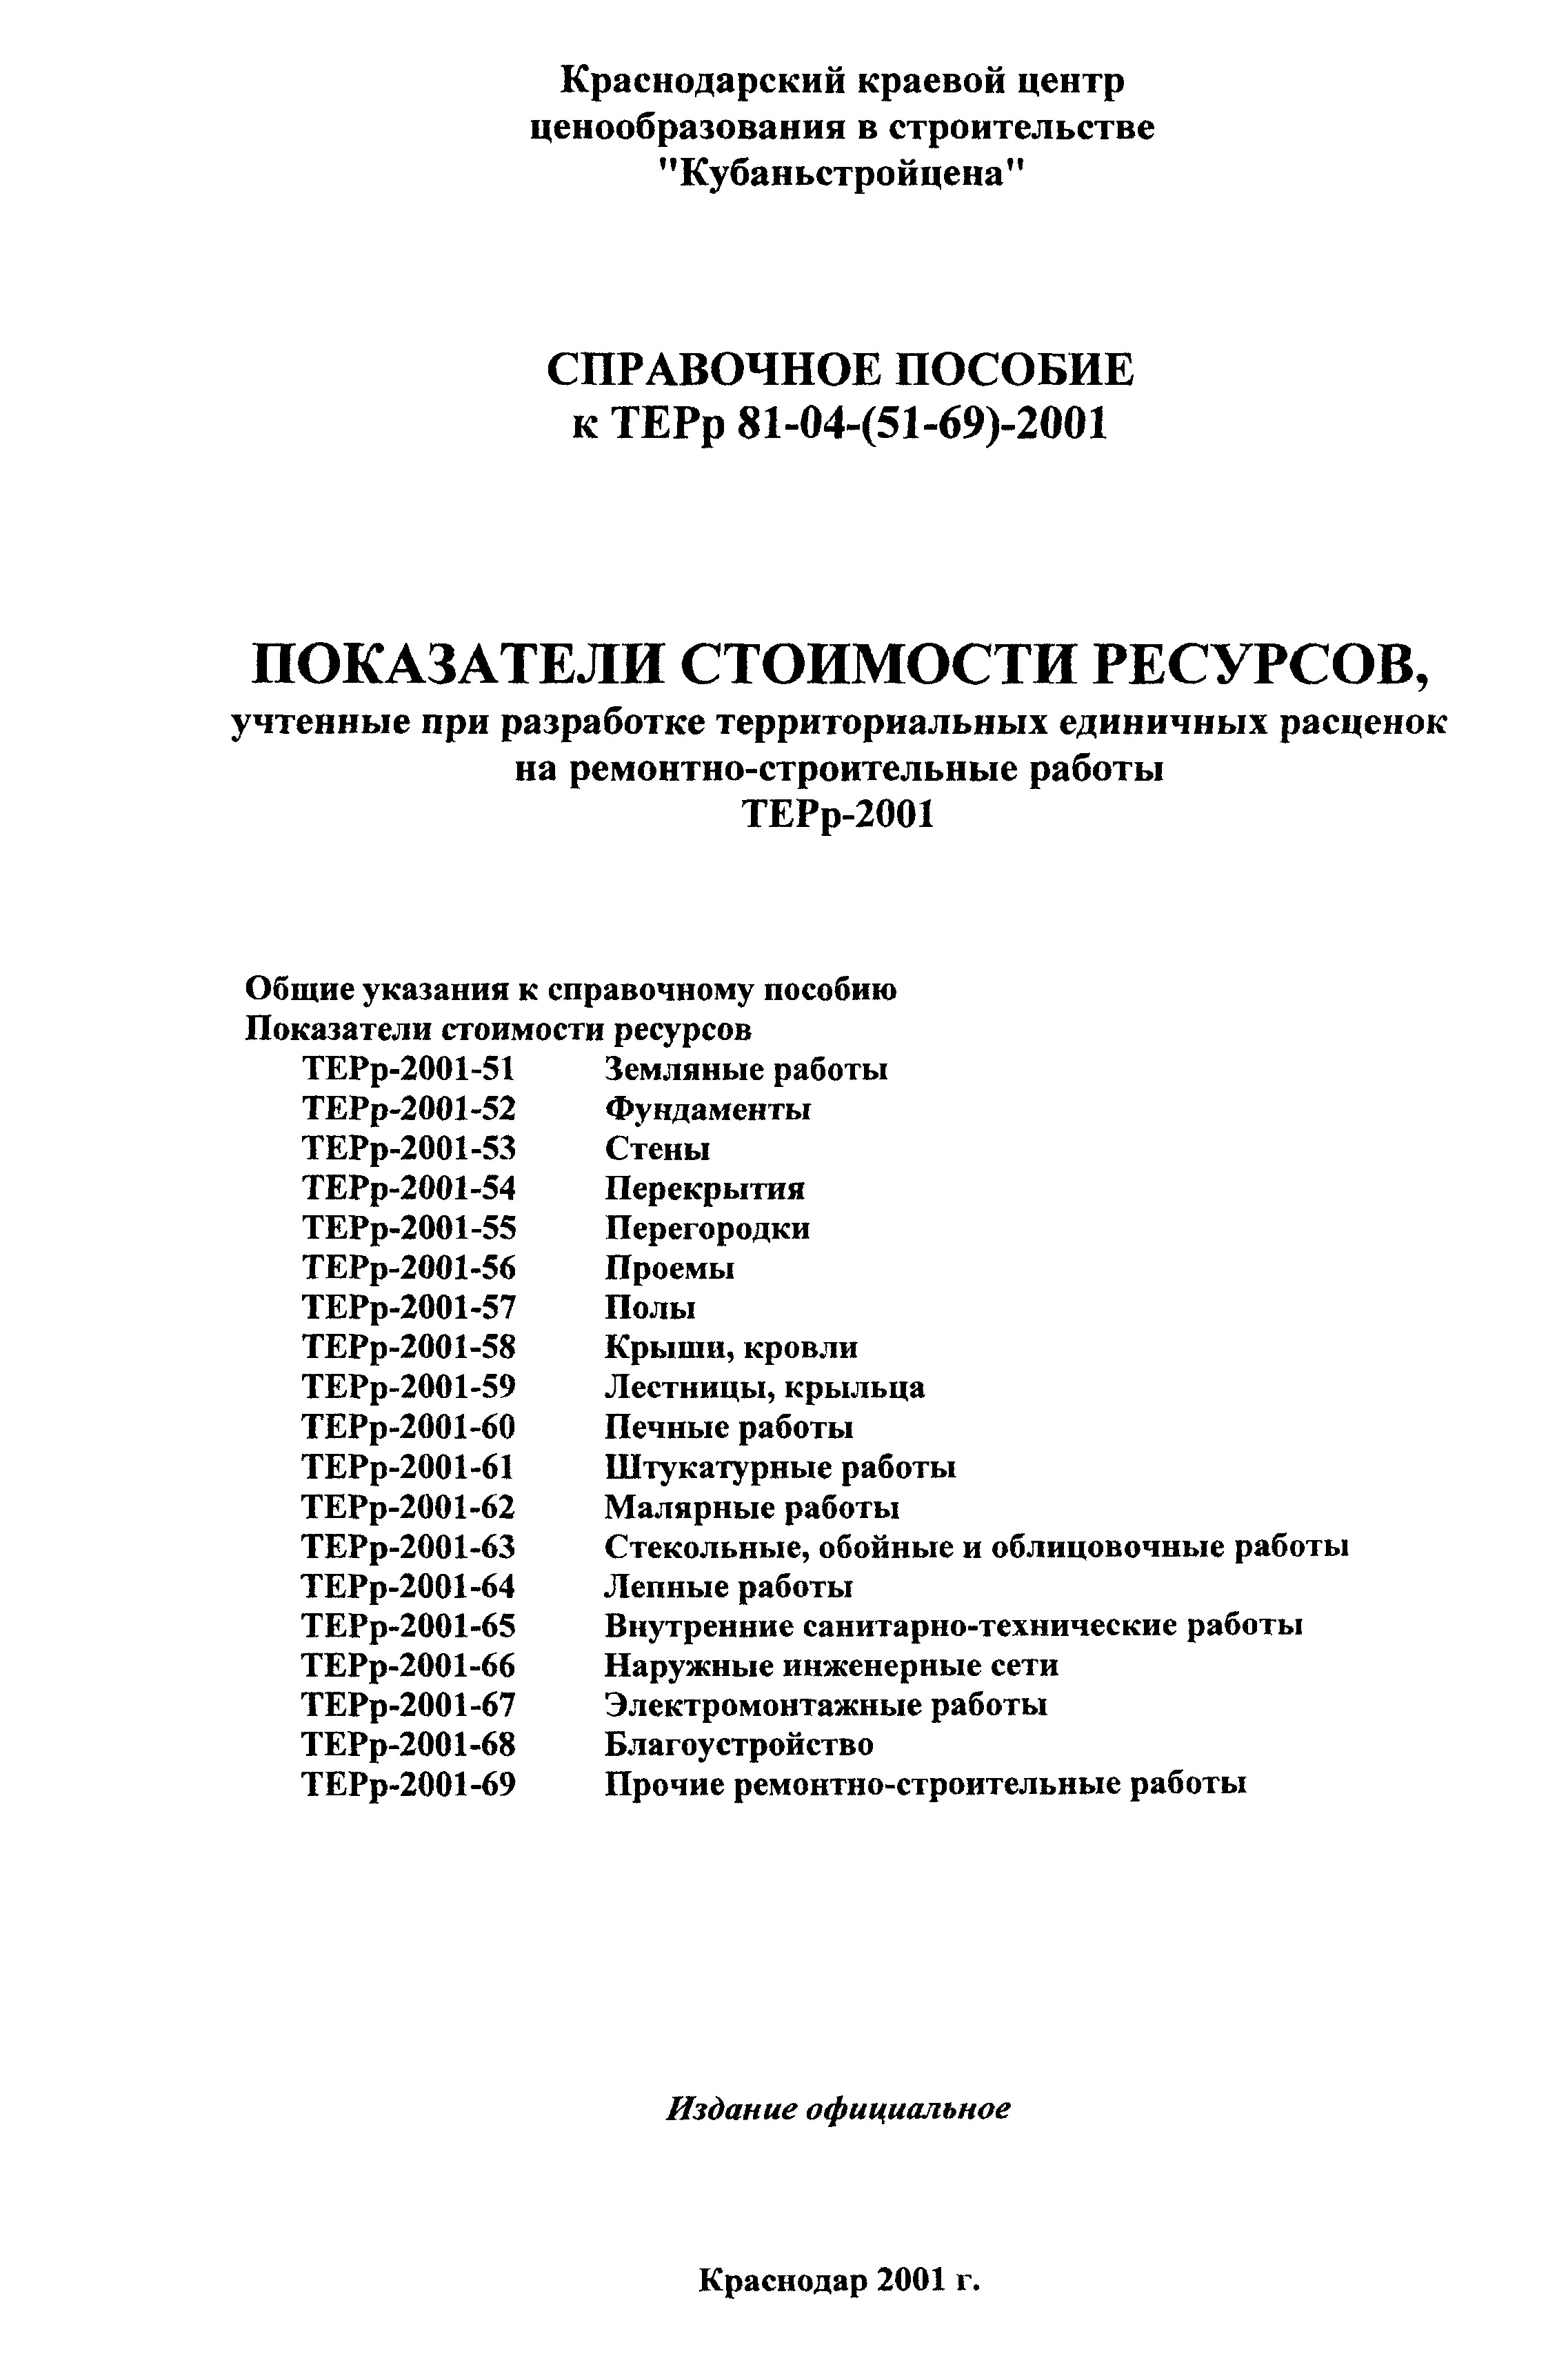 Справочное пособие к ТЕРр 81-04-67-2001